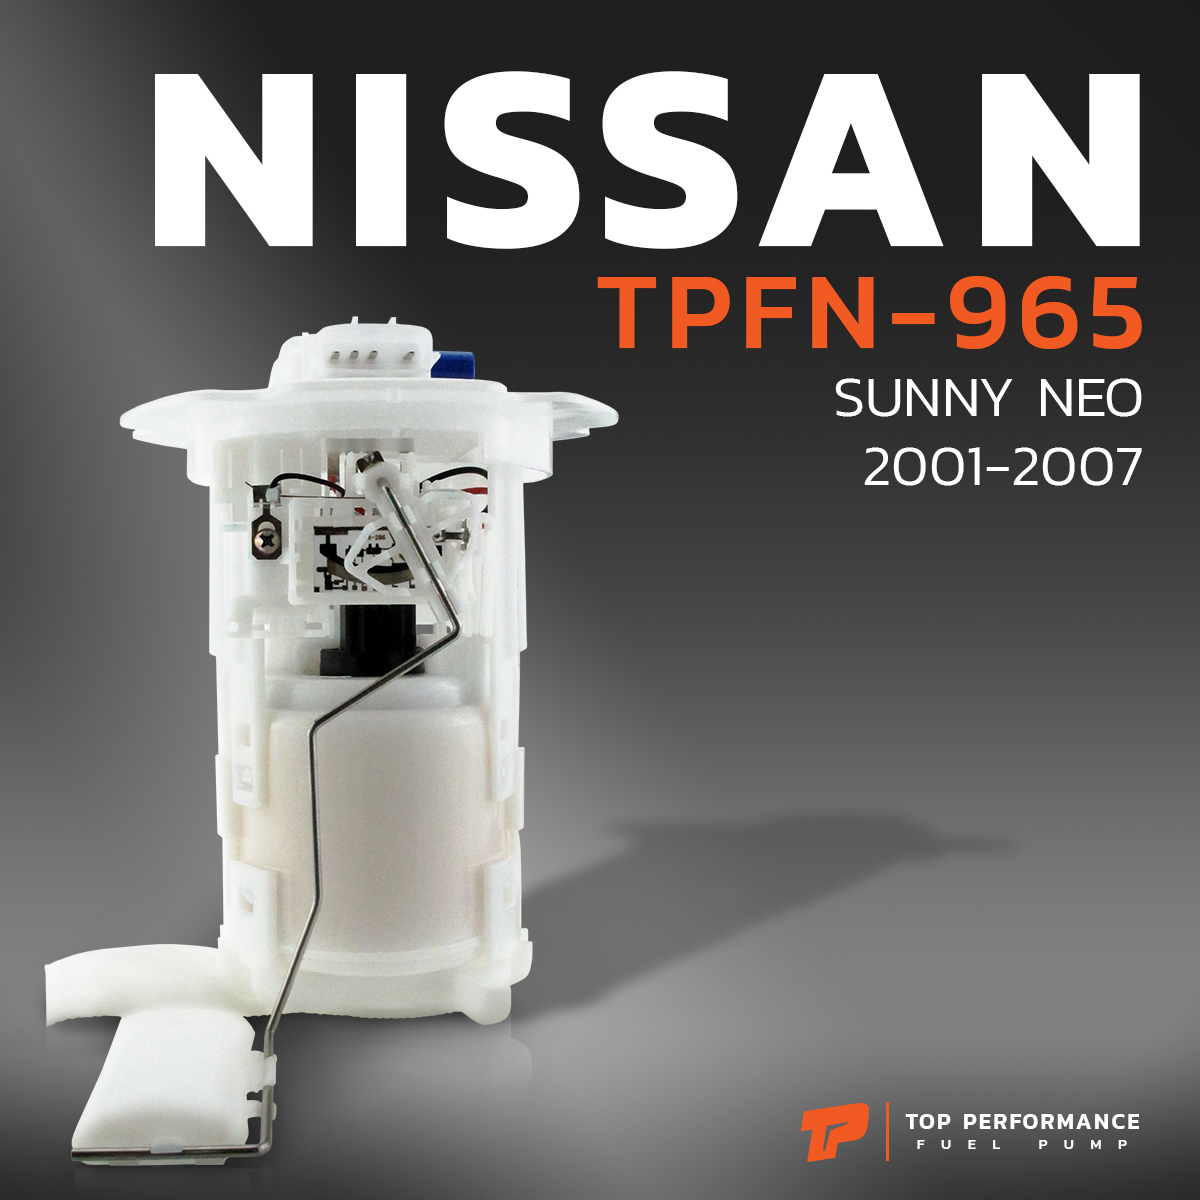 ปั๊มติ๊ก พร้อมลูกลอย ครบชุด NISSAN SUNNY NEO 01-07 - TOP PERFORMANCE JAPAN - TPFN-965 - ปั๊มติก นิสสัน ซันนี่ นีโอ